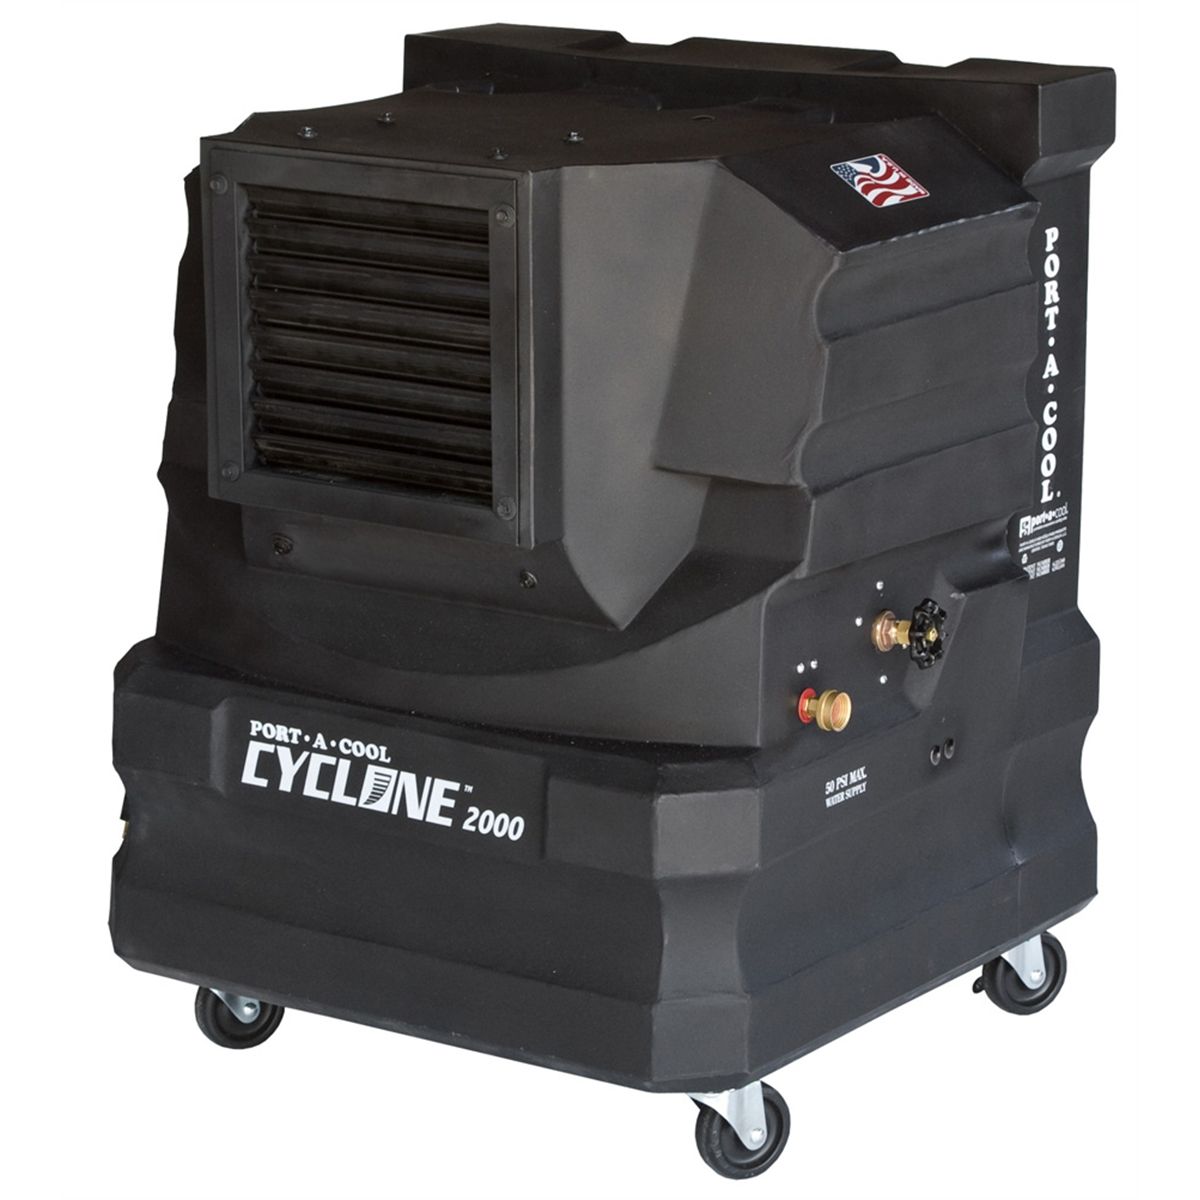 CYCLONE 2000 - Raffrescatore evaporativo professionale portatile per 45mq